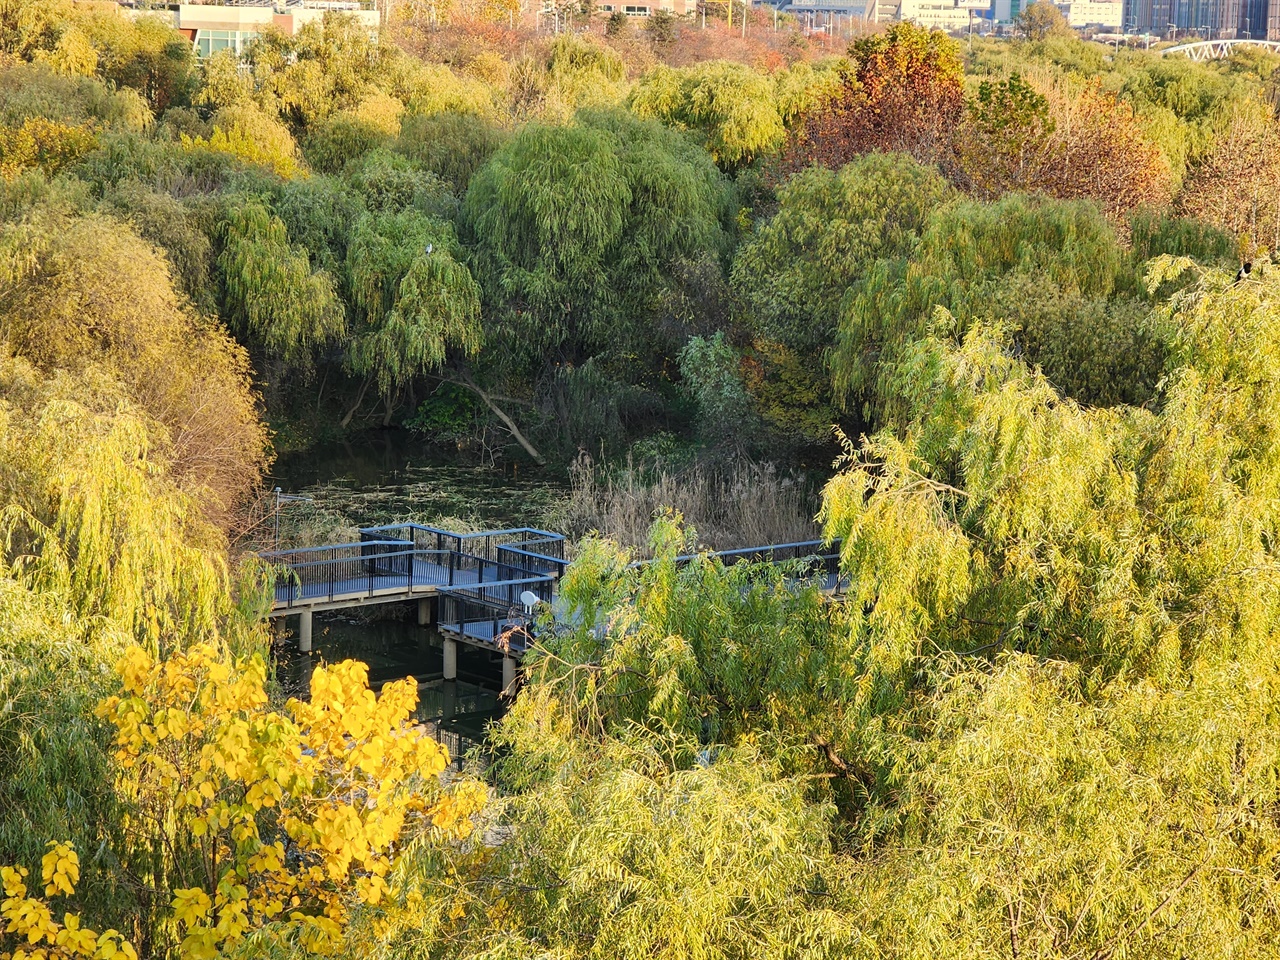 가을 단풍 명소가 된 여의도샛강생태공원  2022년 서울문화재단이 서울 단풍명소로 샛강숲을 지정했습니다. 